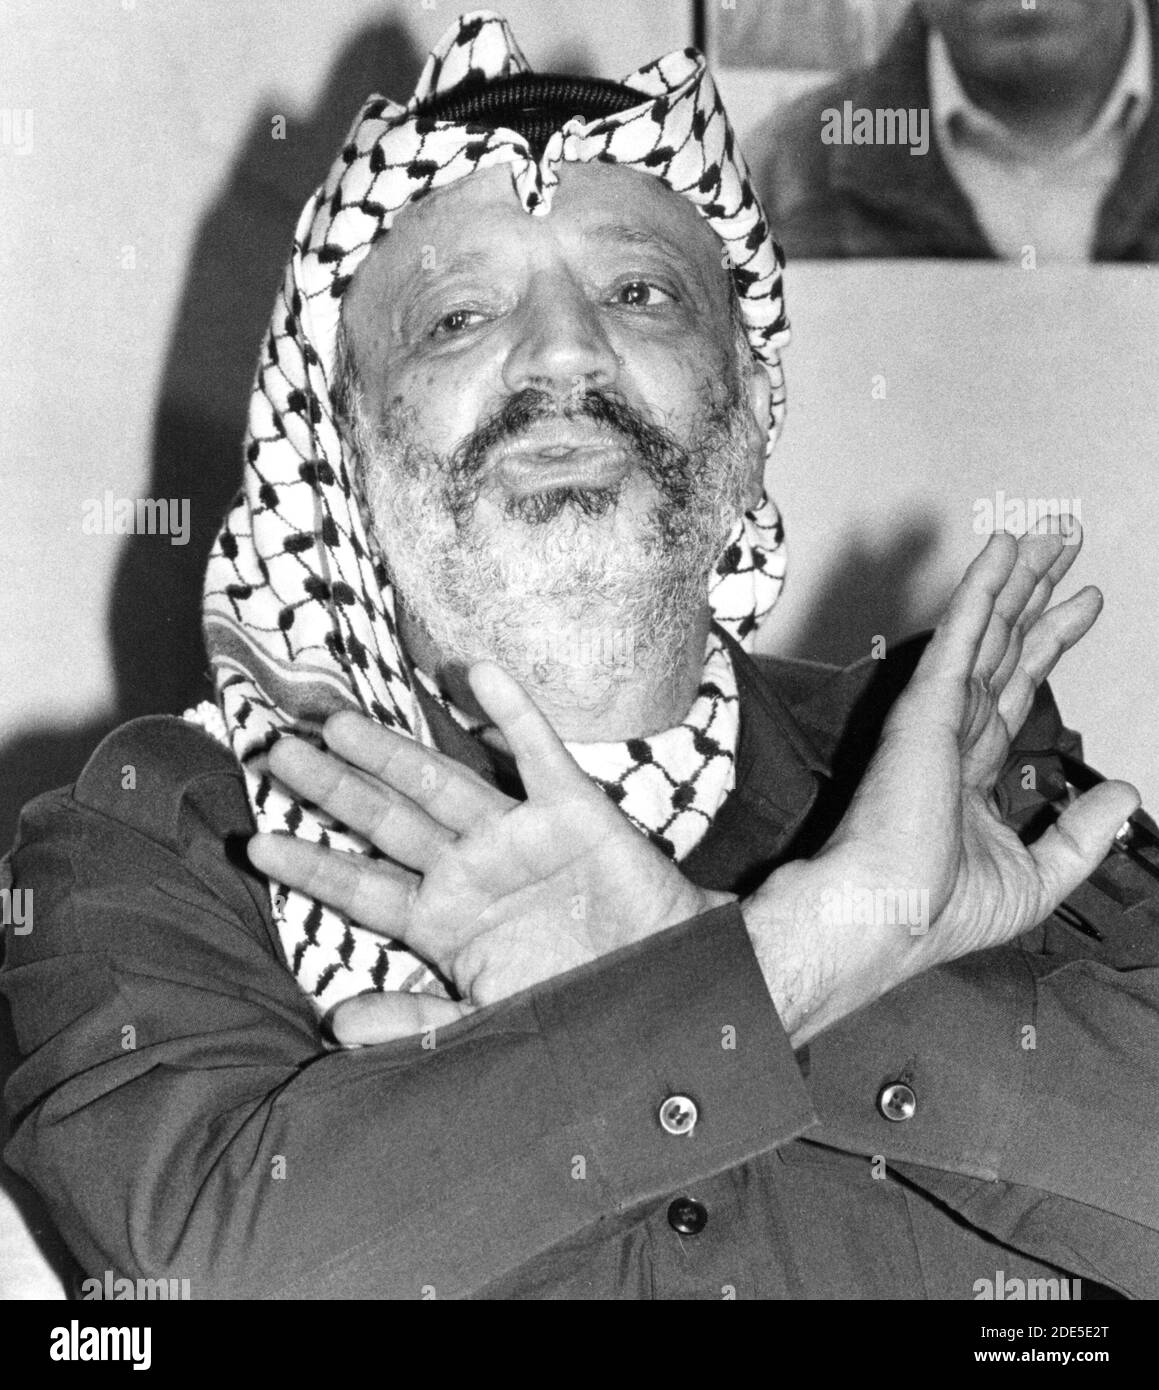 Yasser ARAFAT (Mohammed Yasser Abdel Rahman Abdel Raouf Arafat al-Qudwa), (*24 agosto 1929 – +11 novembre 2004), è stato un . È stato presidente dell'Organizzazione per la Liberazione della Palestina (OLP), presidente dell'autorità Nazionale Palestinese (PNA), e leader del partito politico Fatah e dell'ex gruppo paramilitare, che ha fondato nel 1959. Fotografato nel maggio 1988 a Tripolis, Libia. Foto Stock